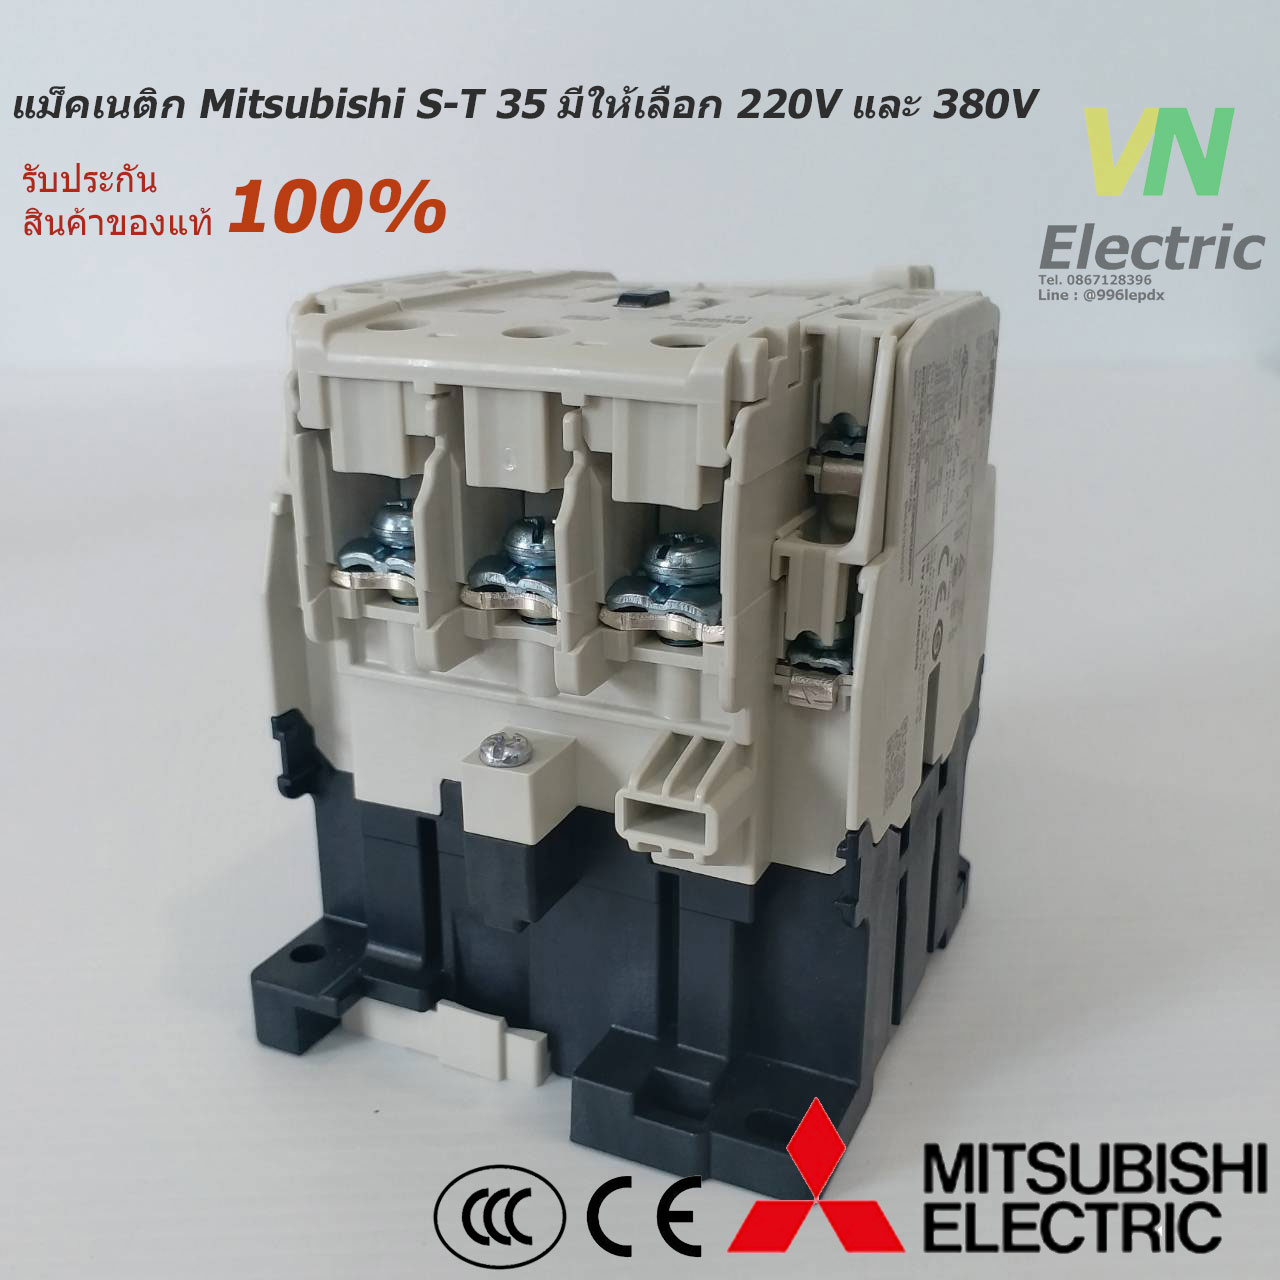 แม็กเนติกมิตซูบิชิ MITSUBISHI Magnetic Contactor S-T 35 220V-380V แม็คเนติก  ตัวเลือก คอยล์ 220 V.